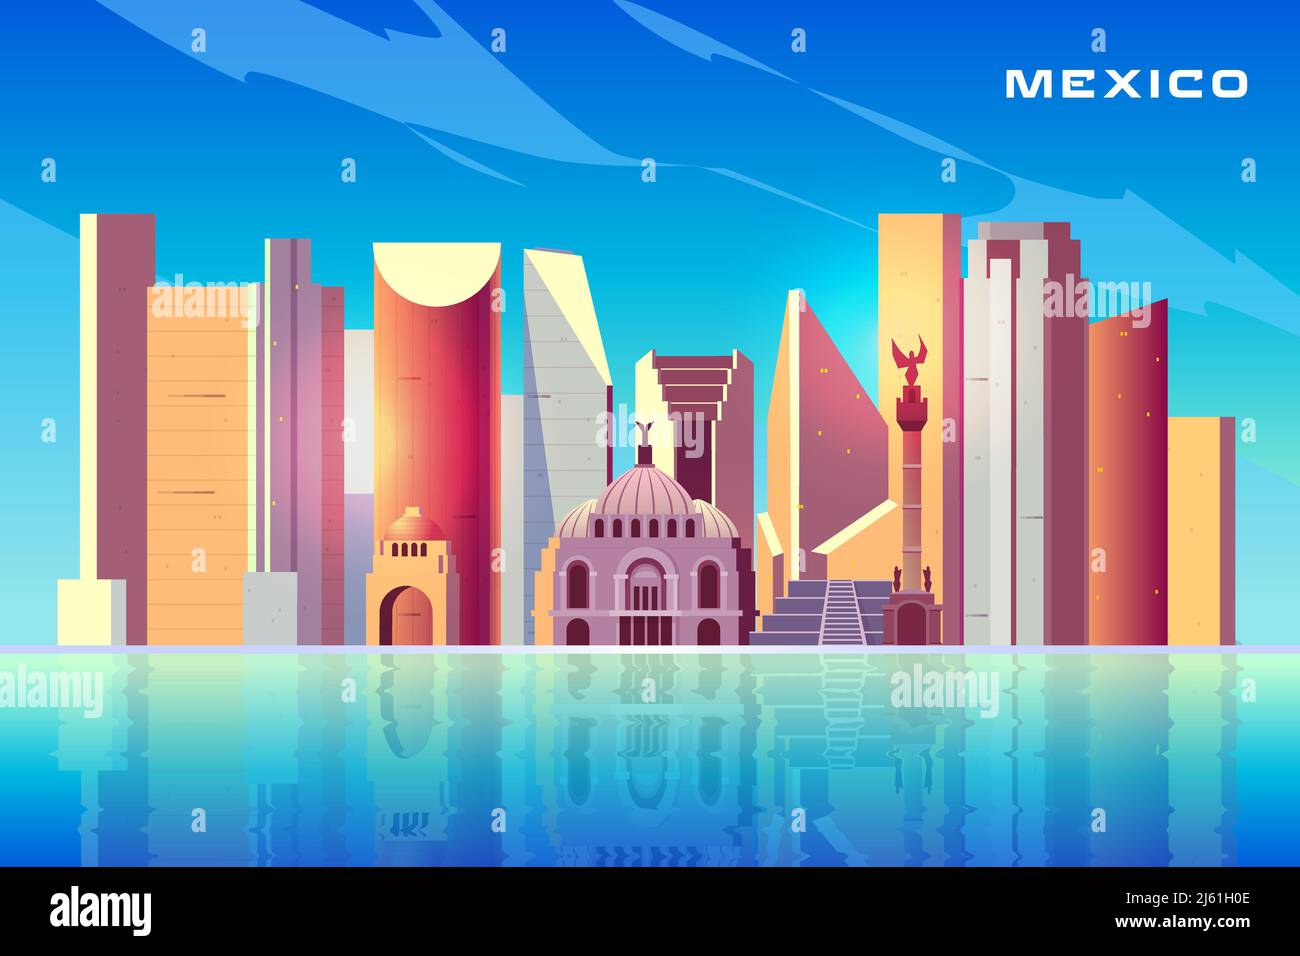 Ciudad de México horizonte de dibujos animados vector fondo con modernos rascacielos, edificios históricos, arquitectura turística atracciones, importante la cultura Ilustración del Vector